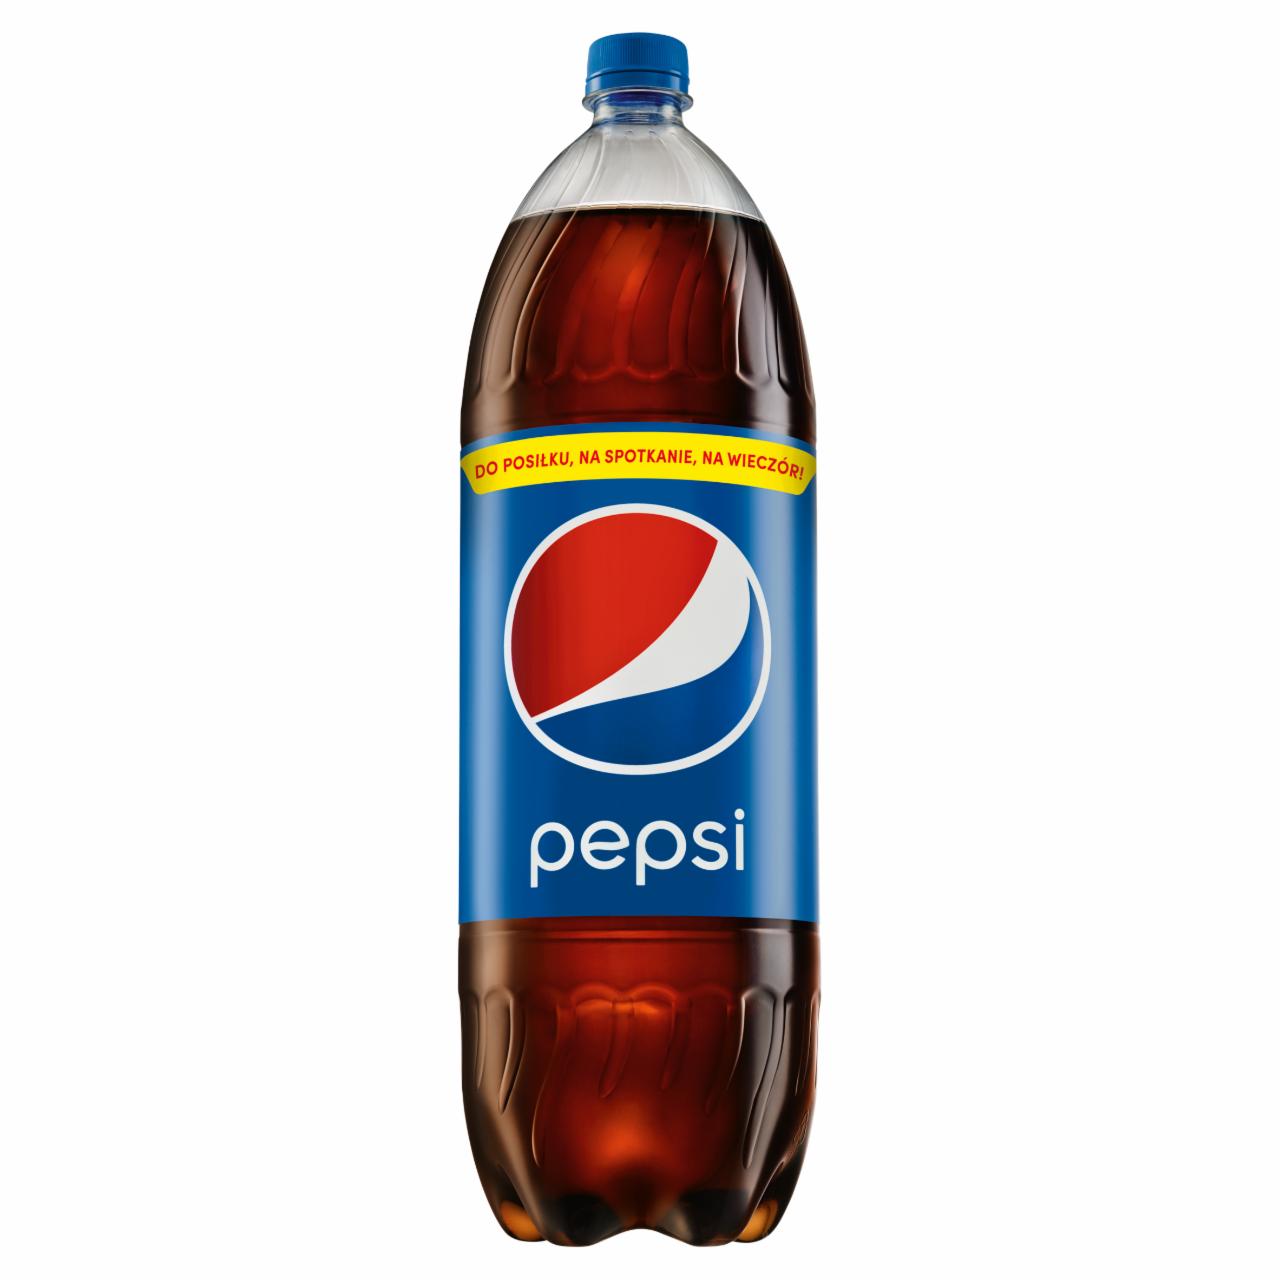 Zdjęcia - Pepsi Cola Napój gazowany 2,25 l